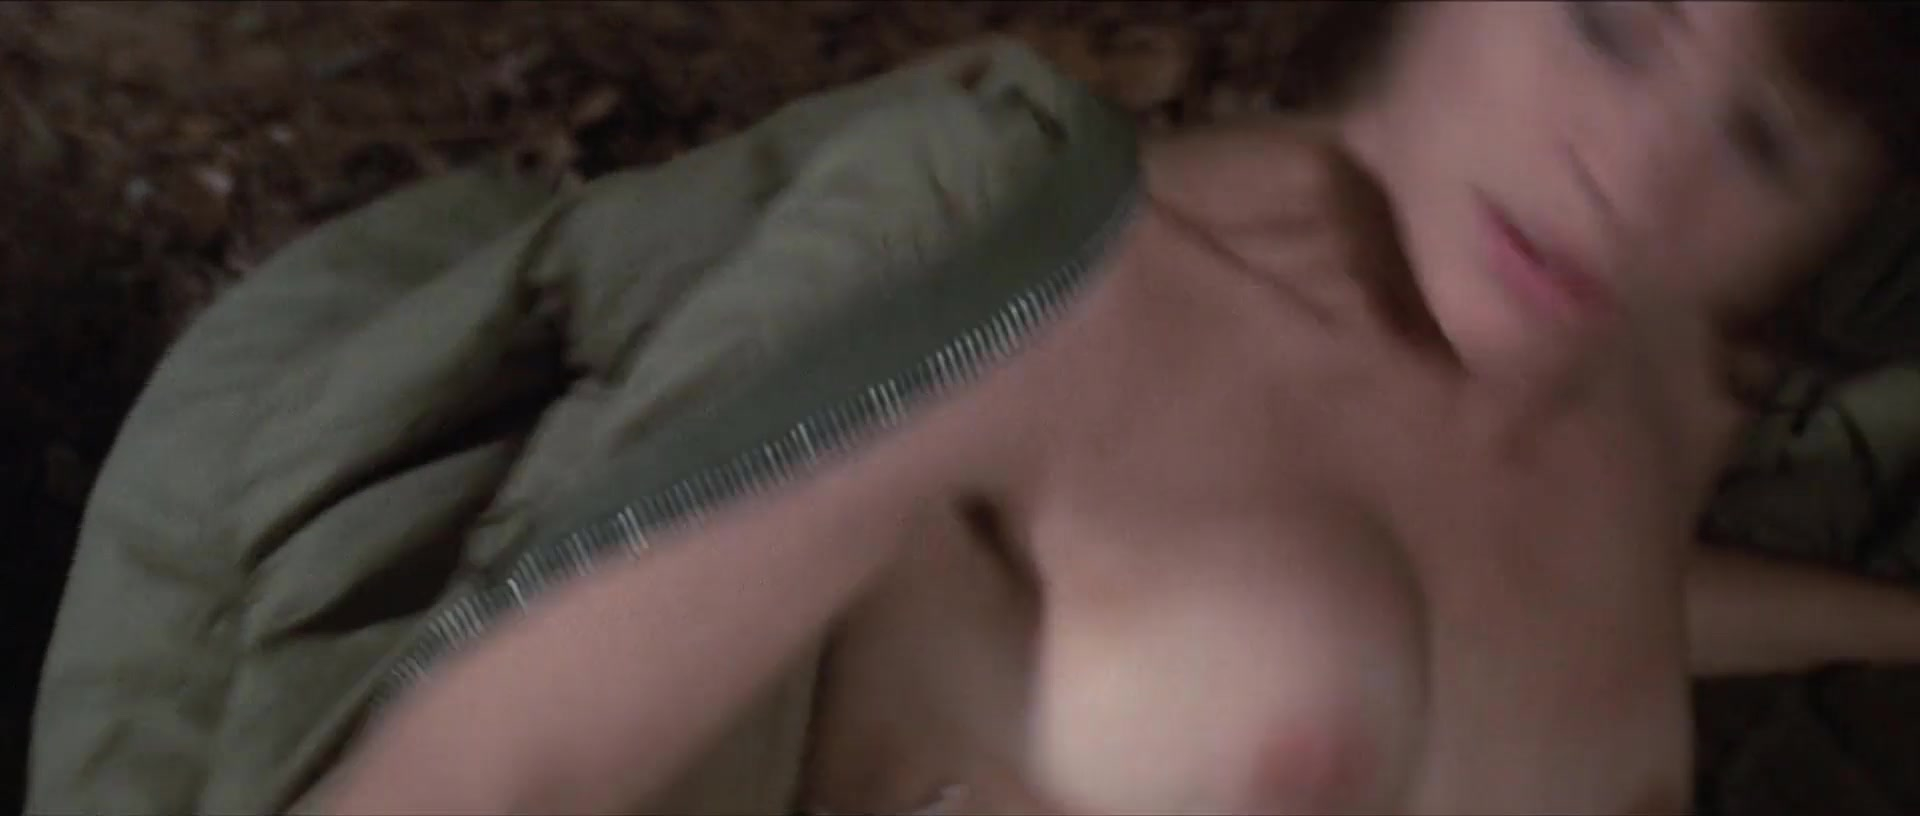 King Kong Girl Sex - Nude video celebs Â» Linda Hamilton nude - King Kong Lives (1986)